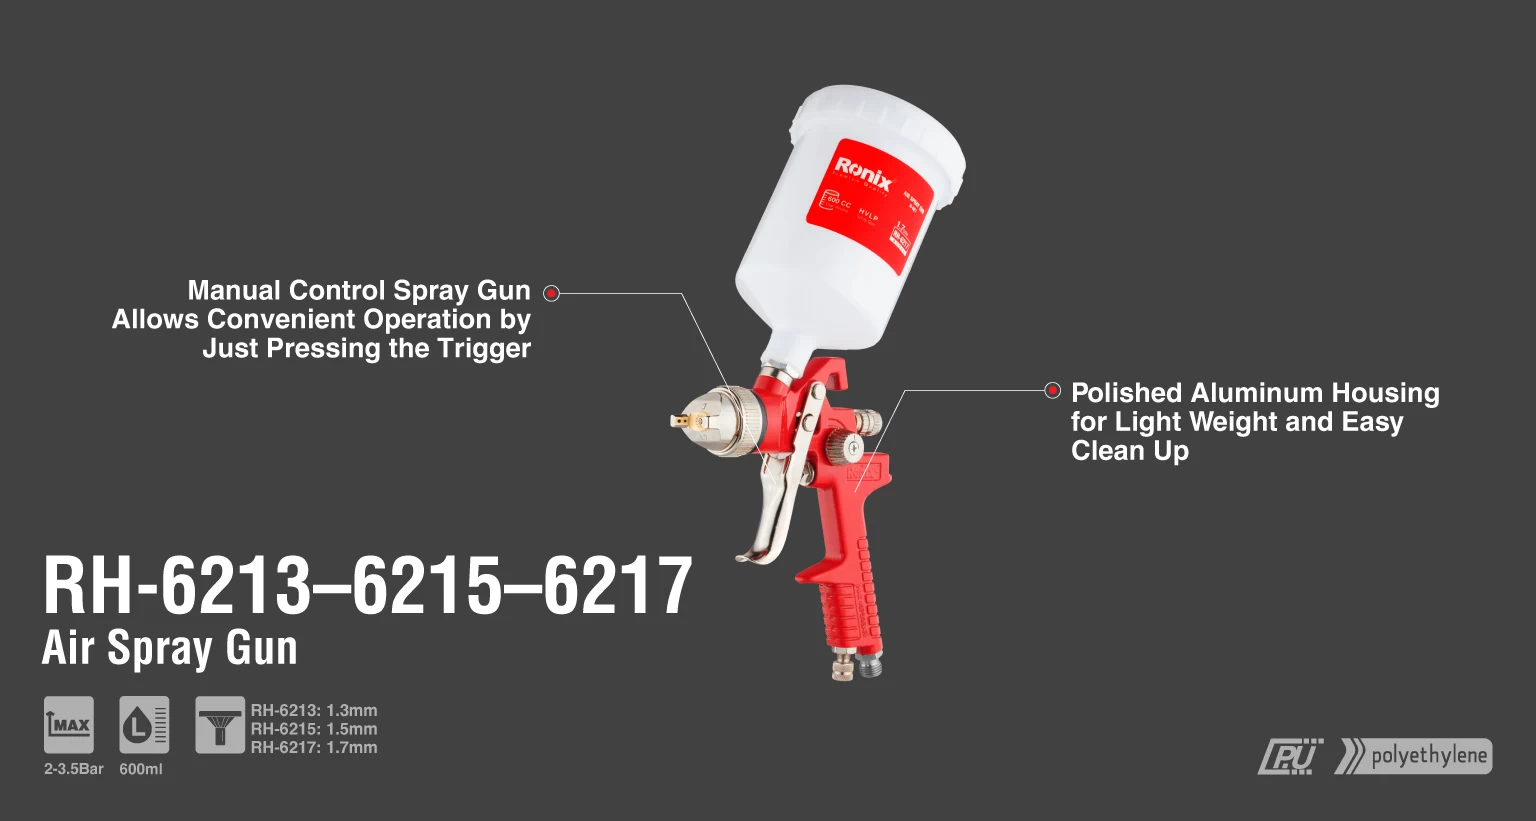 Pistola Pulverizadora de taza plástica y boquilla 1.5mm_details